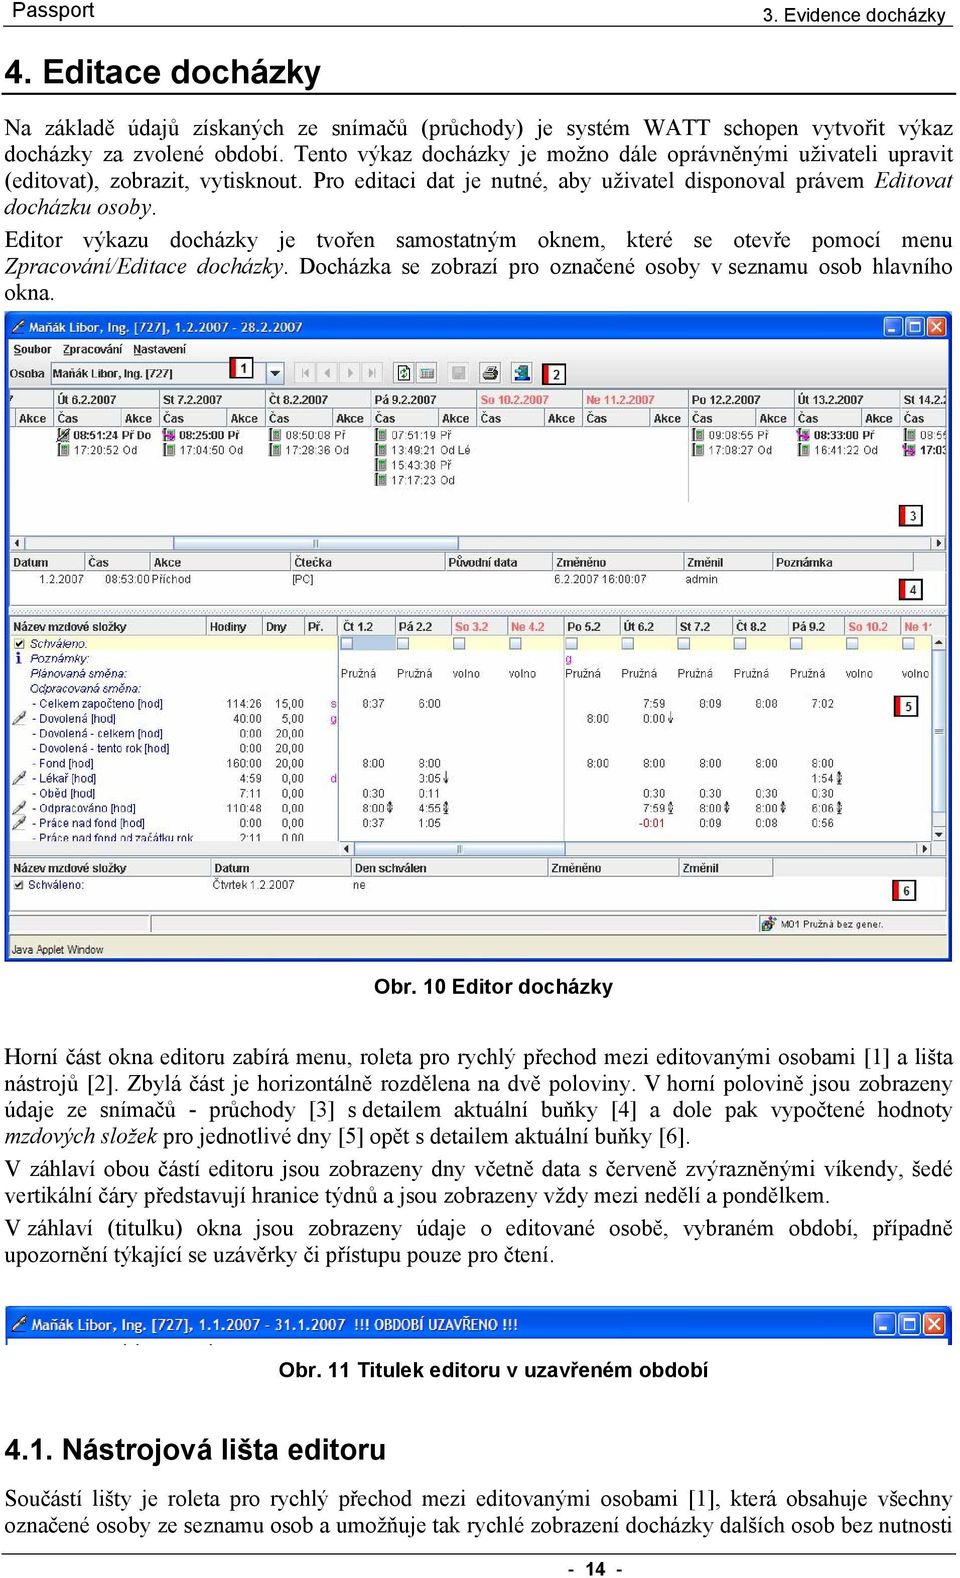 Editor výkazu docházky je tvořen samostatným oknem, které se otevře pomocí menu Zpracování/Editace docházky. Docházka se zobrazí pro označené osoby v seznamu osob hlavního okna. Obr.